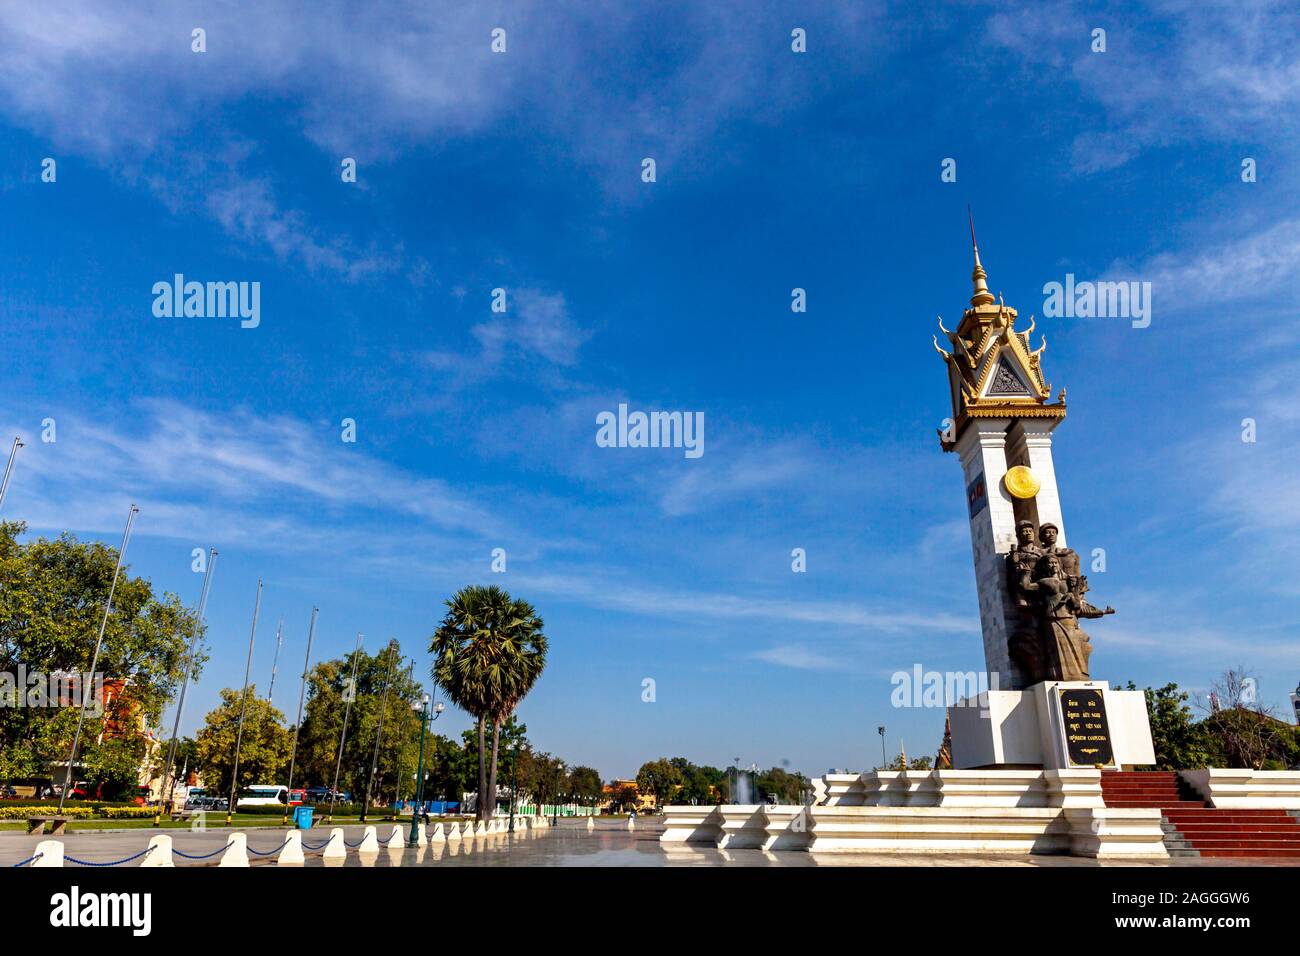 Ein großes Denkmal zur Erinnerung an die Allianz zwischen Kambodscha und Vietnam ist ein Wahrzeichen am Wat Botum Park in Phnom Penh, Kambodscha. Stockfoto